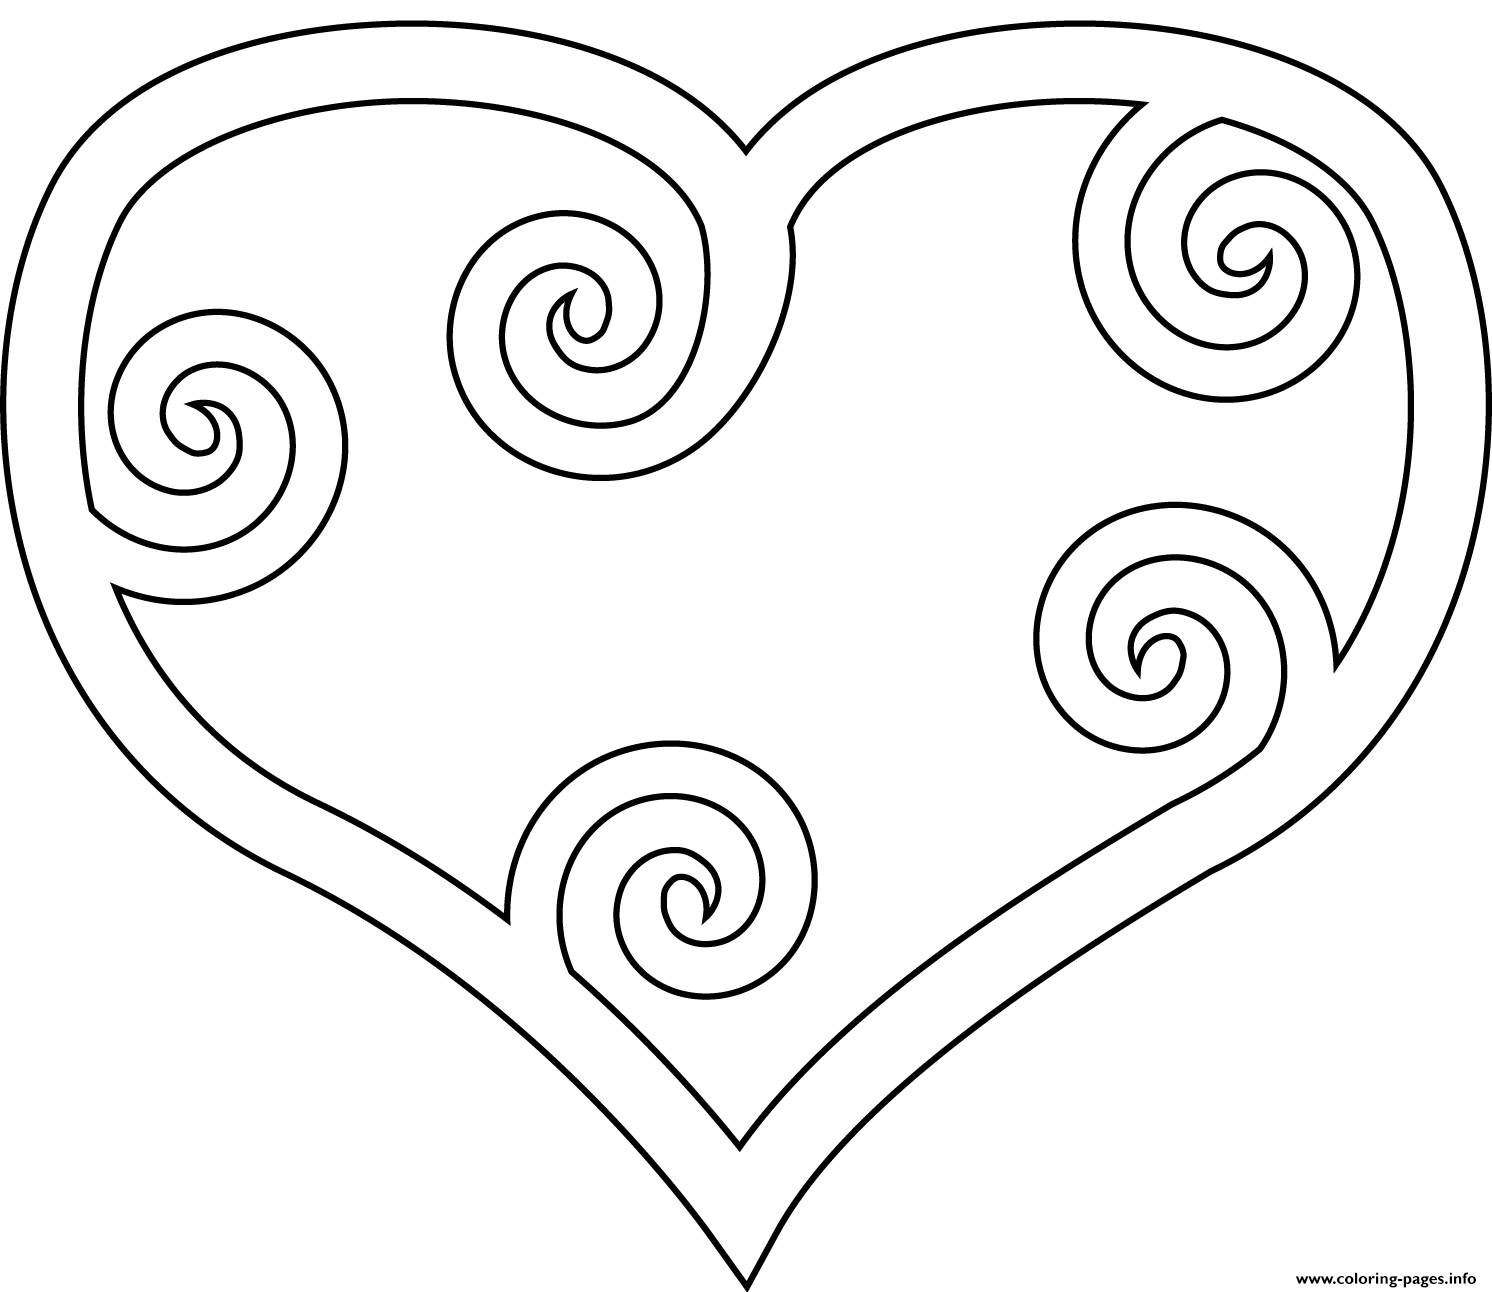 Картинка сердечко для детей раскраска. Раскраска сердечко с узорами. Раскраска сердце с узорами. Раскраска сердечко с узорами для детей. Раскраски для девочек сердечки.